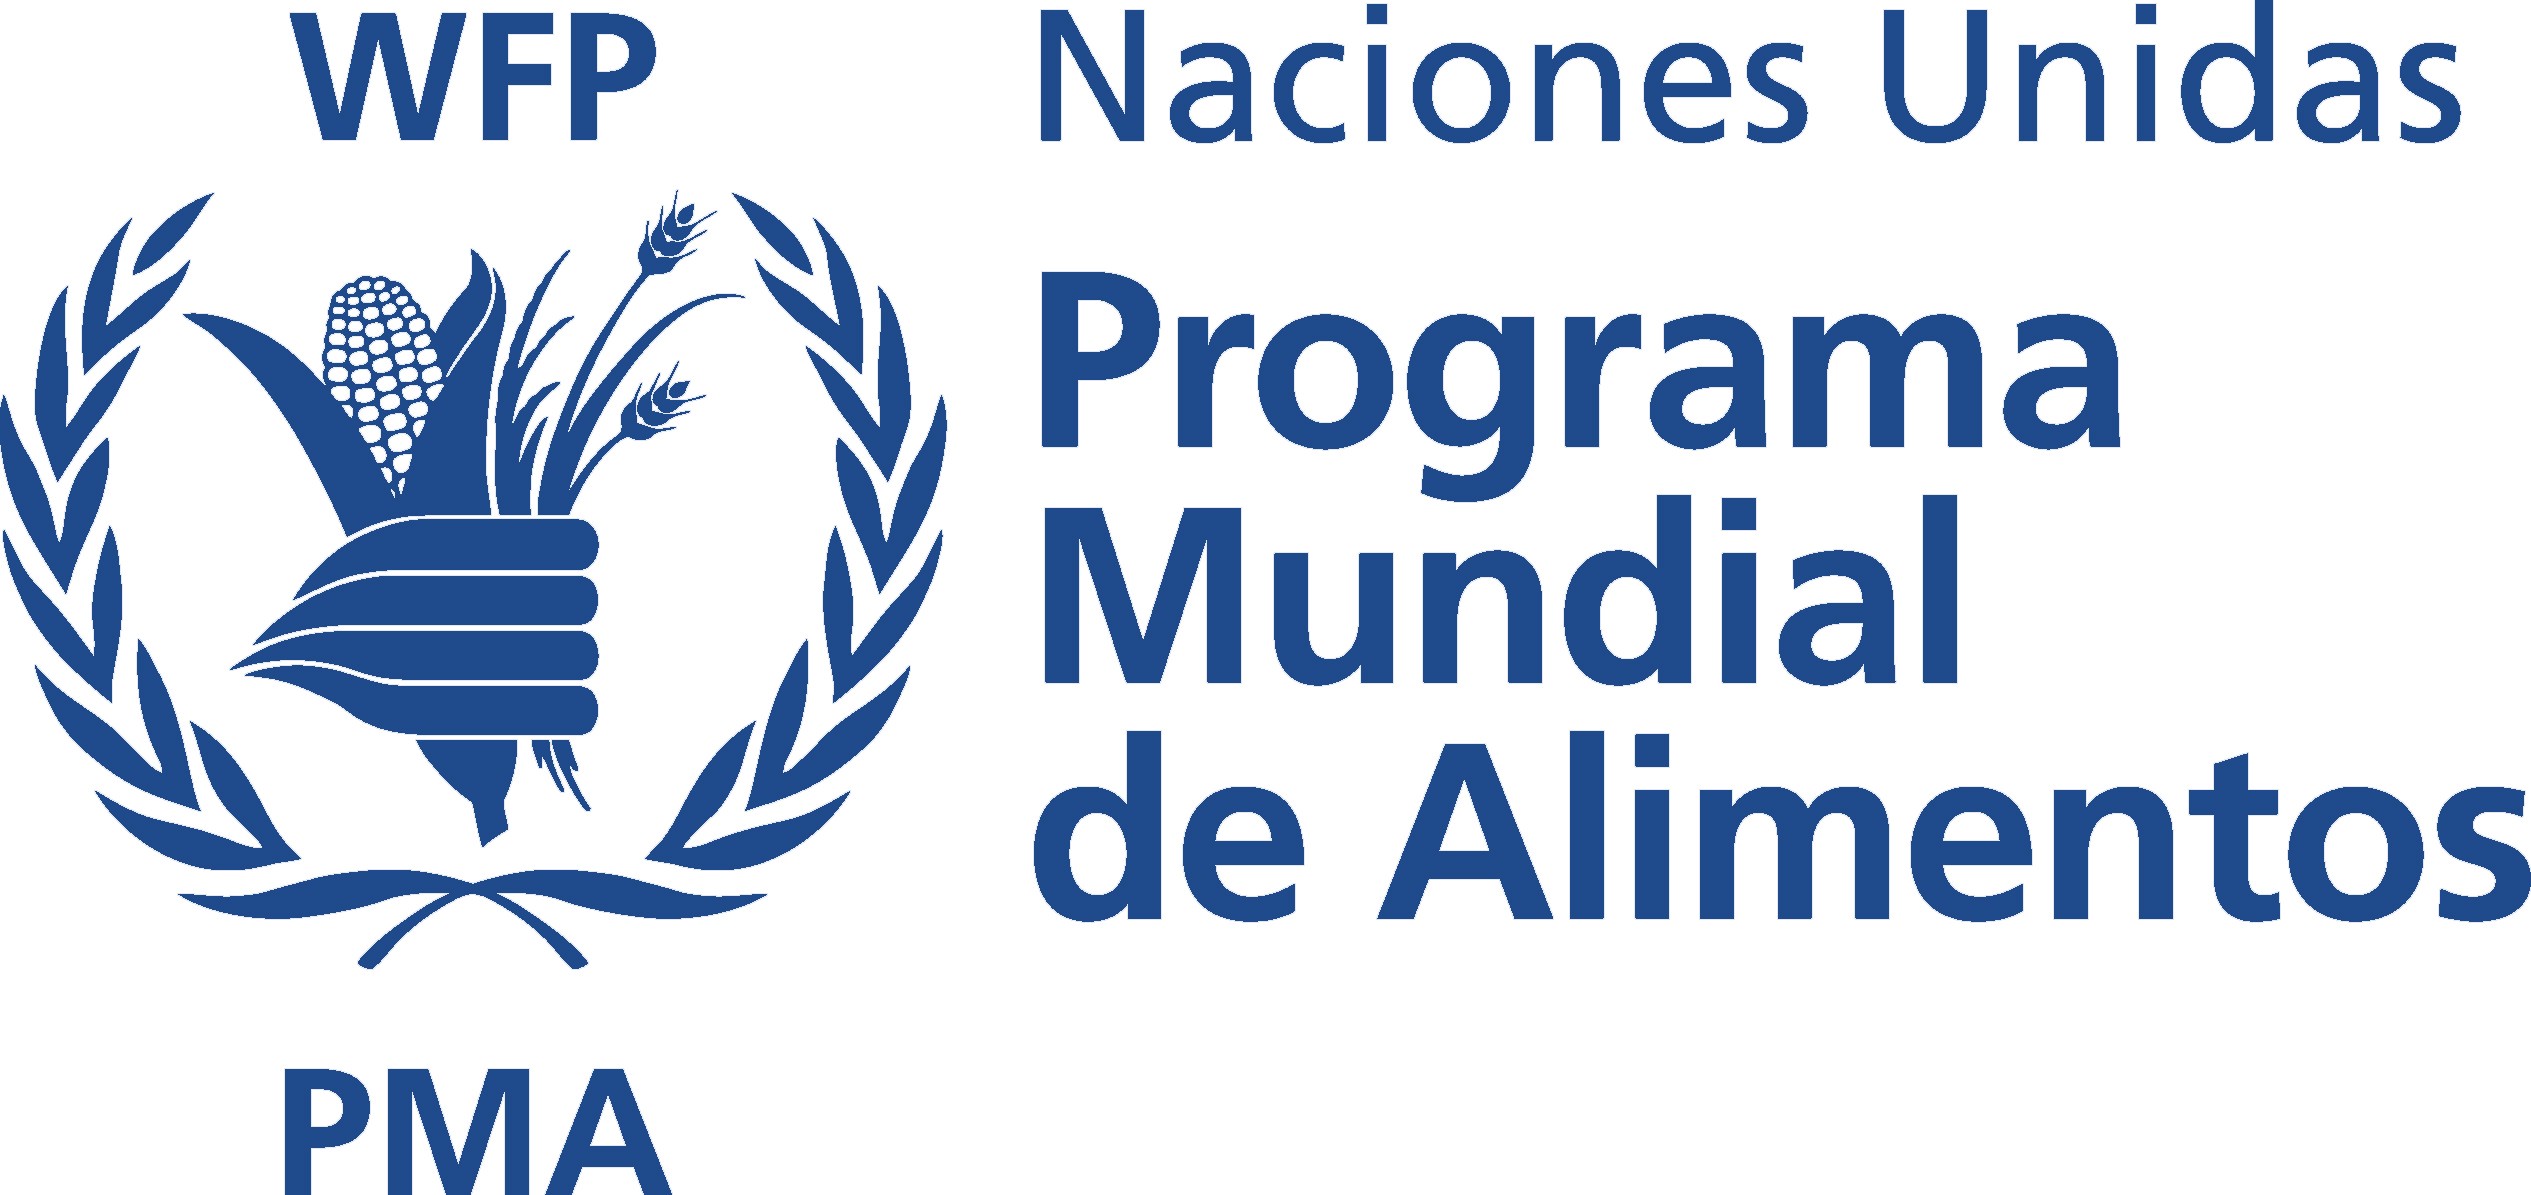 Programa Mundial de Alimentos Logo photo - 1